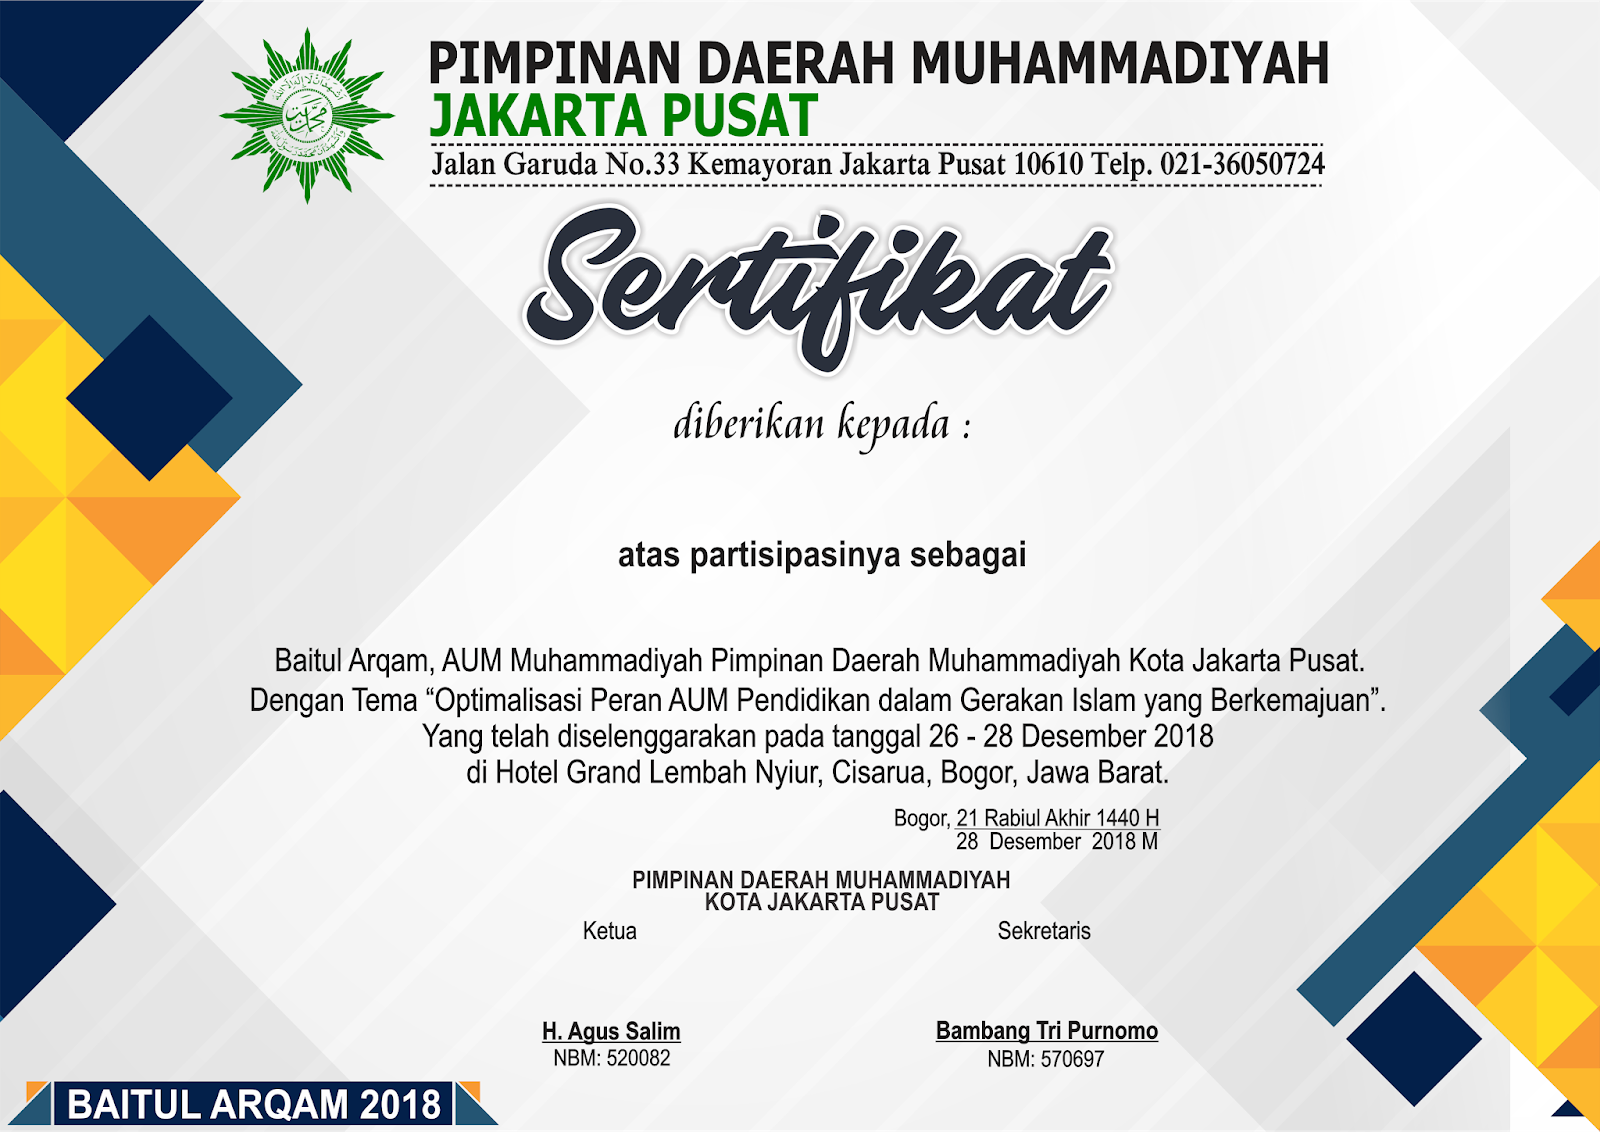  Desain Sertifikat  Baitul Arqam Muhammadiyah PDM Jakpus